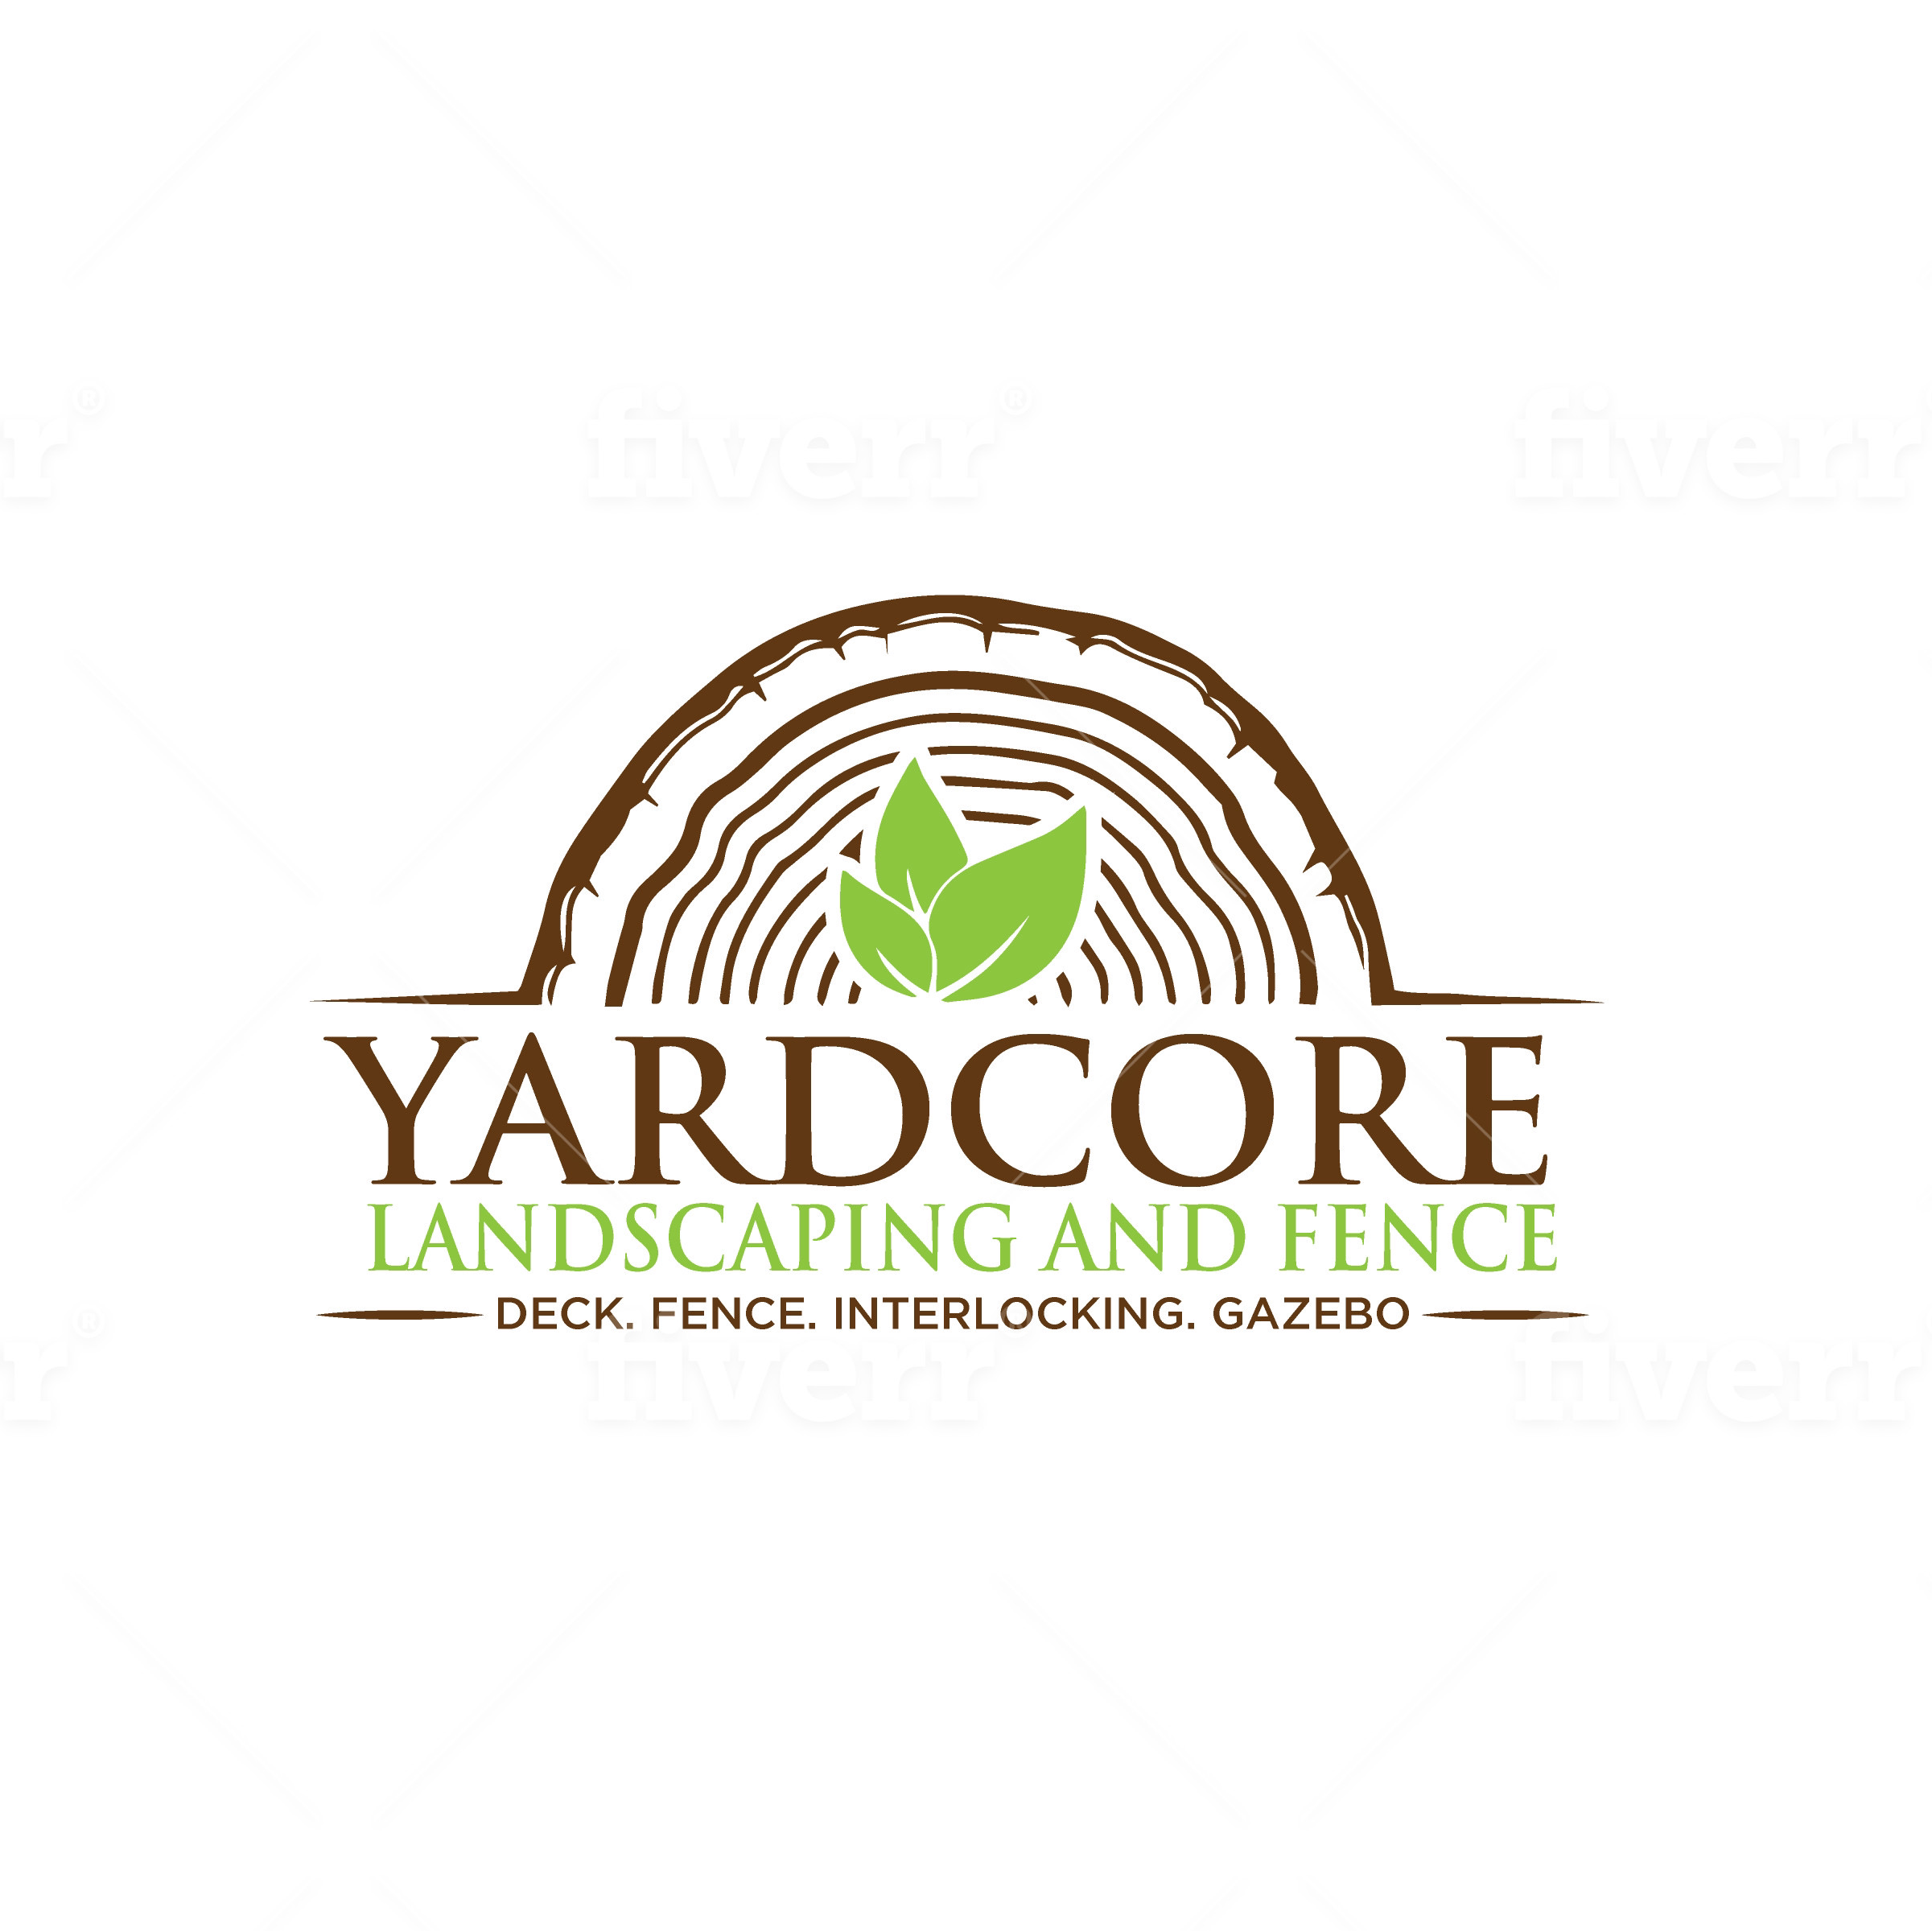 Yardcore Landscaping Design Inc. Markham (647)833-4123